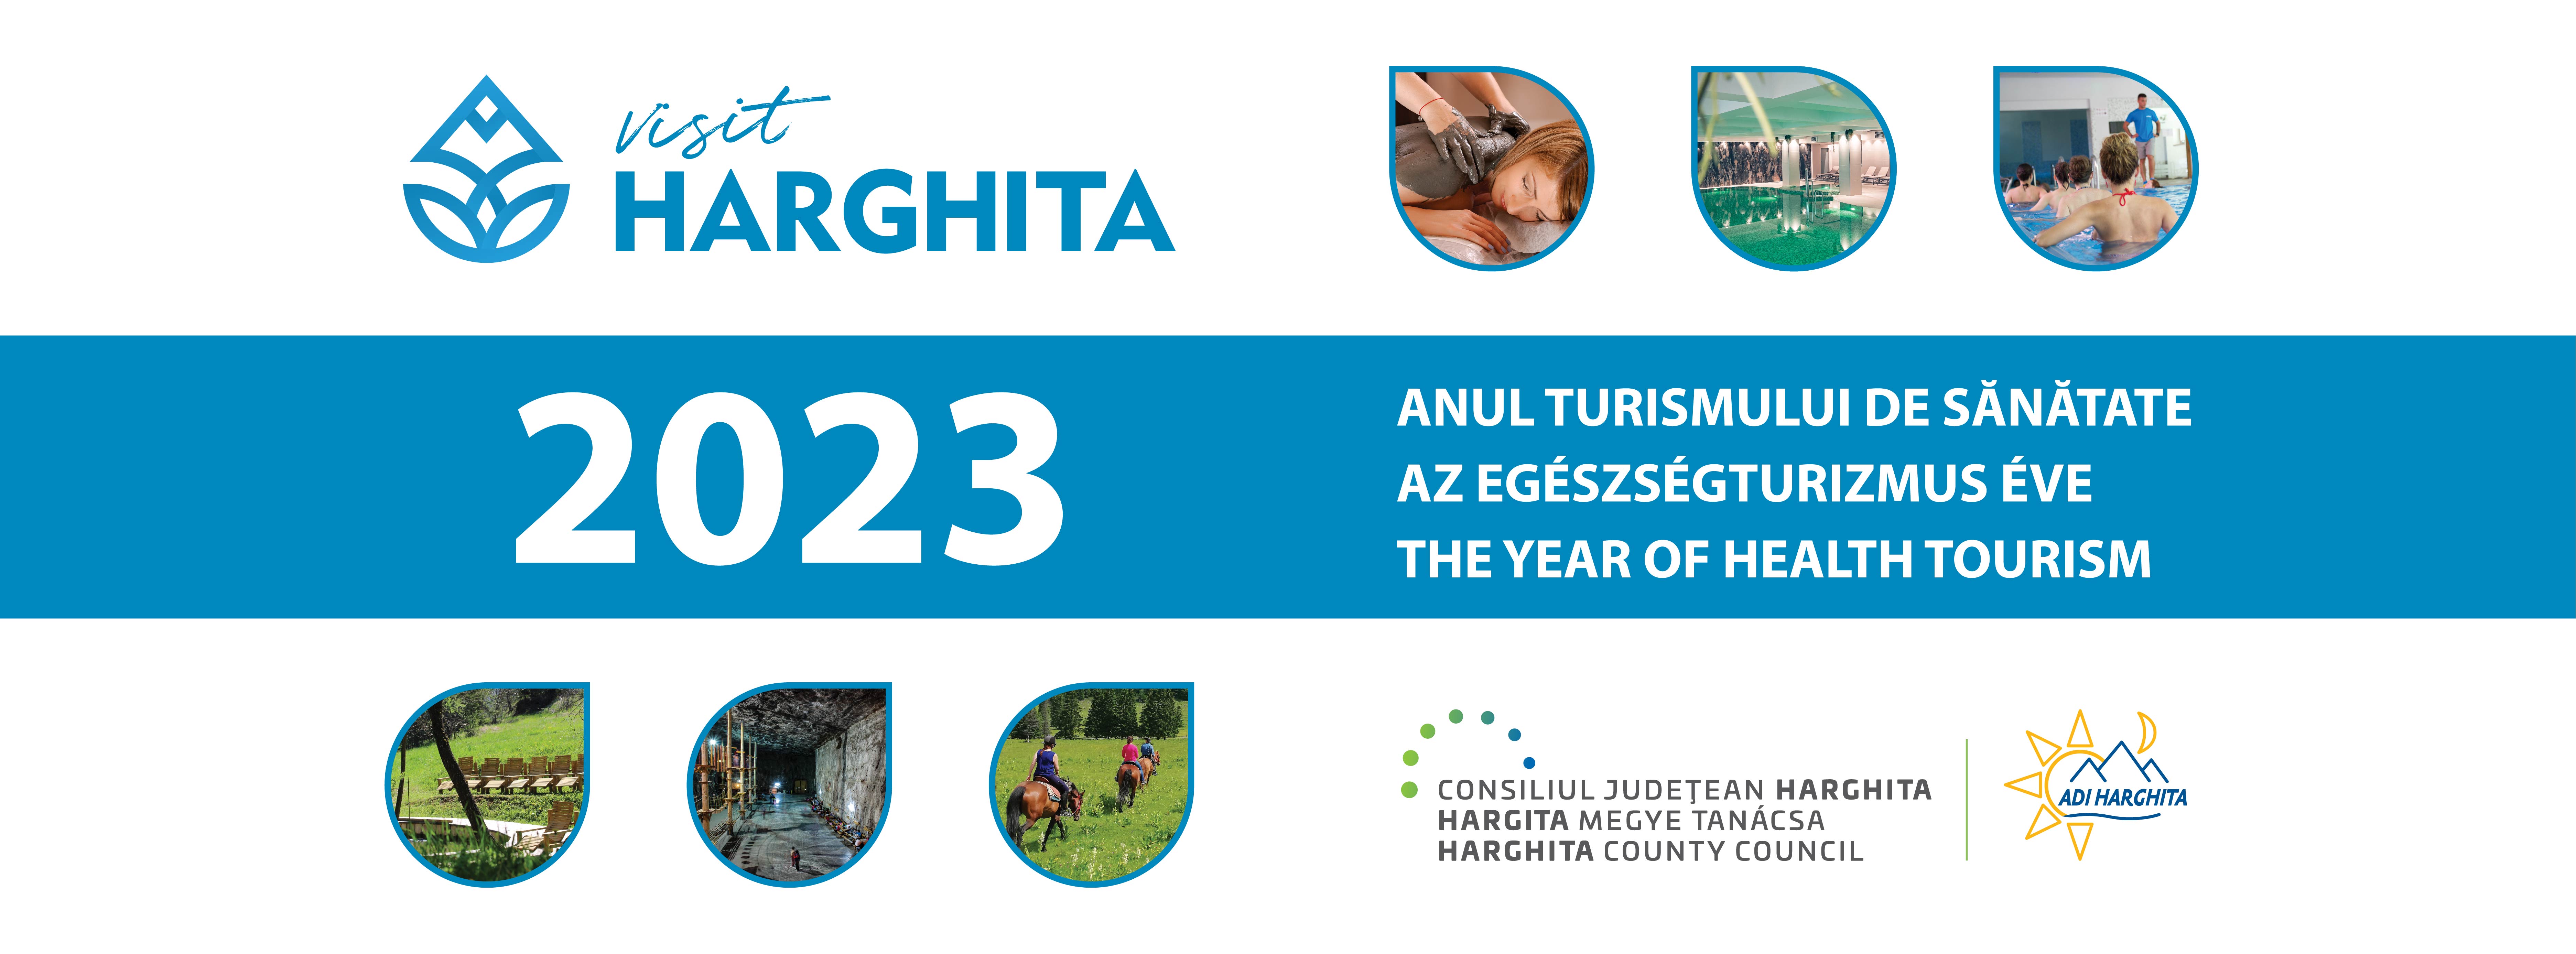 Visit Harghita – Az egészségturizmus éve 